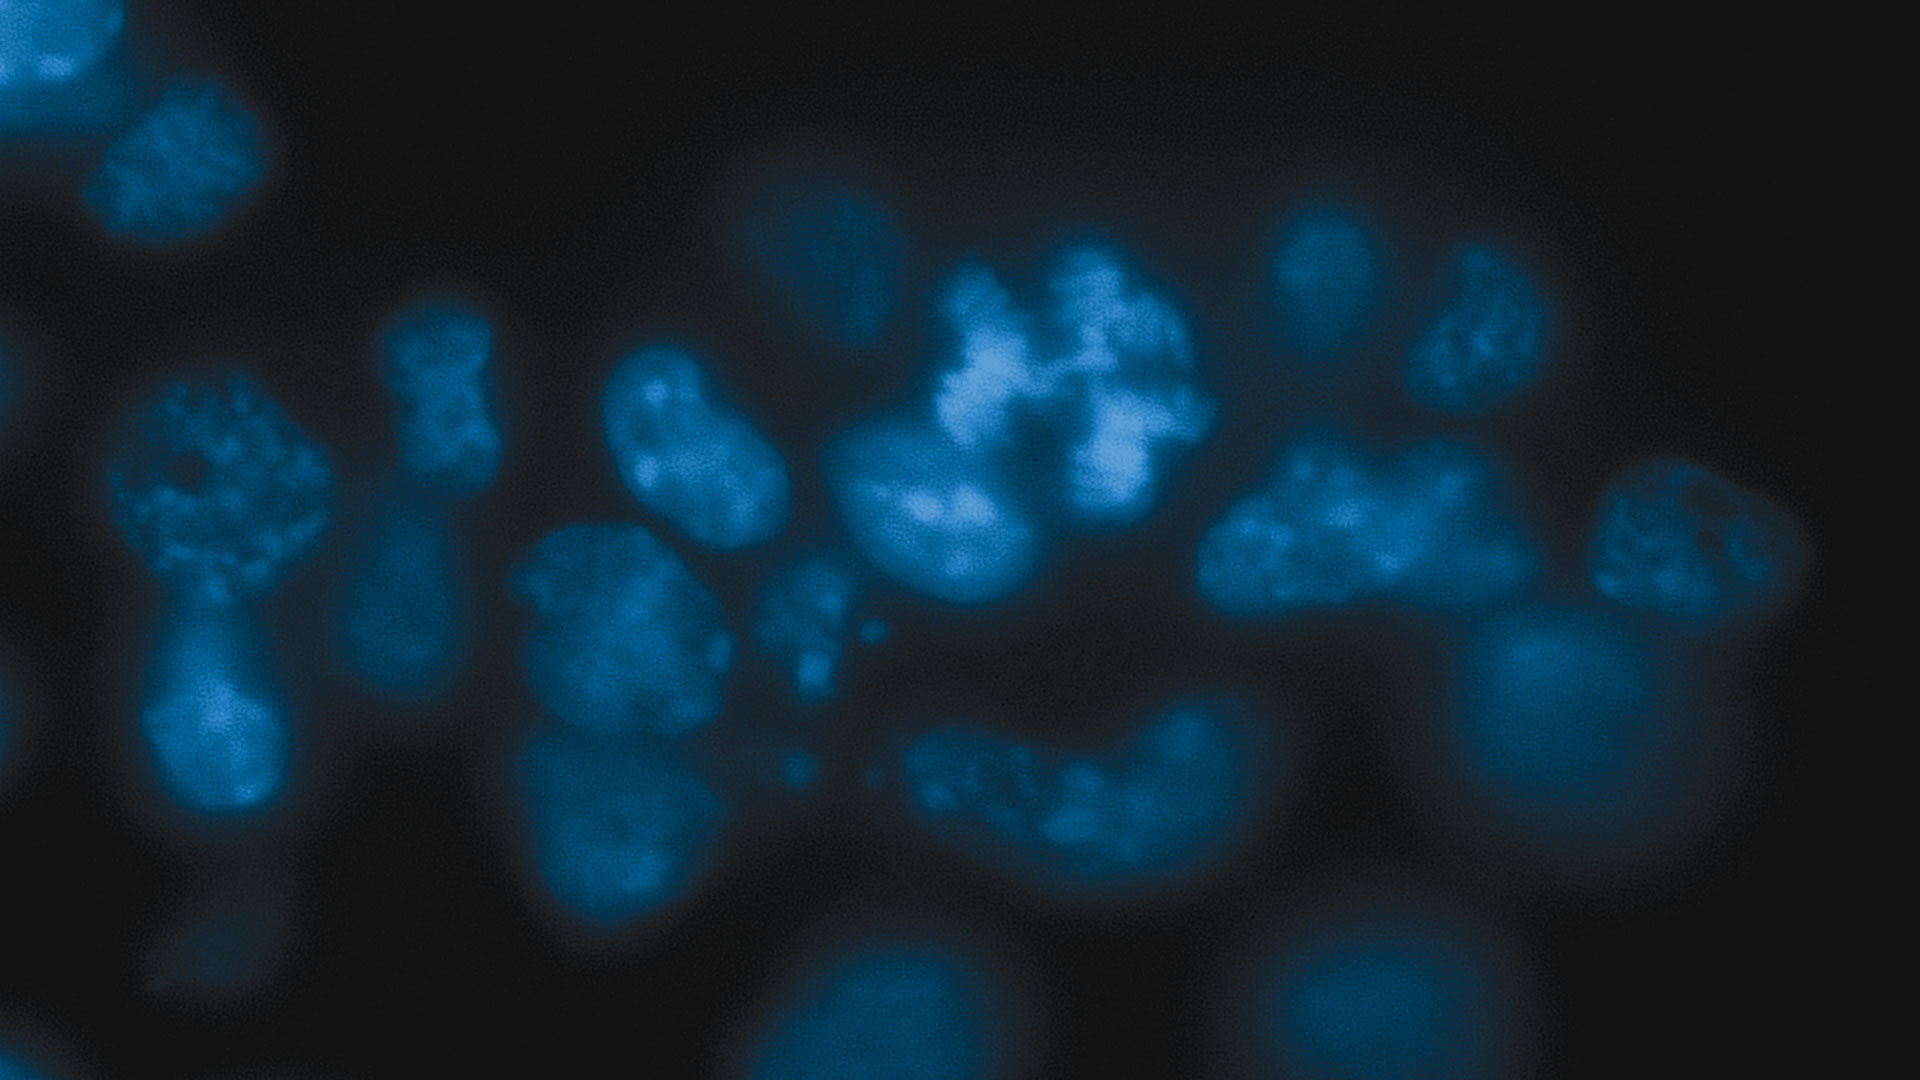 Mice cells. Хромосомы при кошачьем глазе. Tas3 Cell.